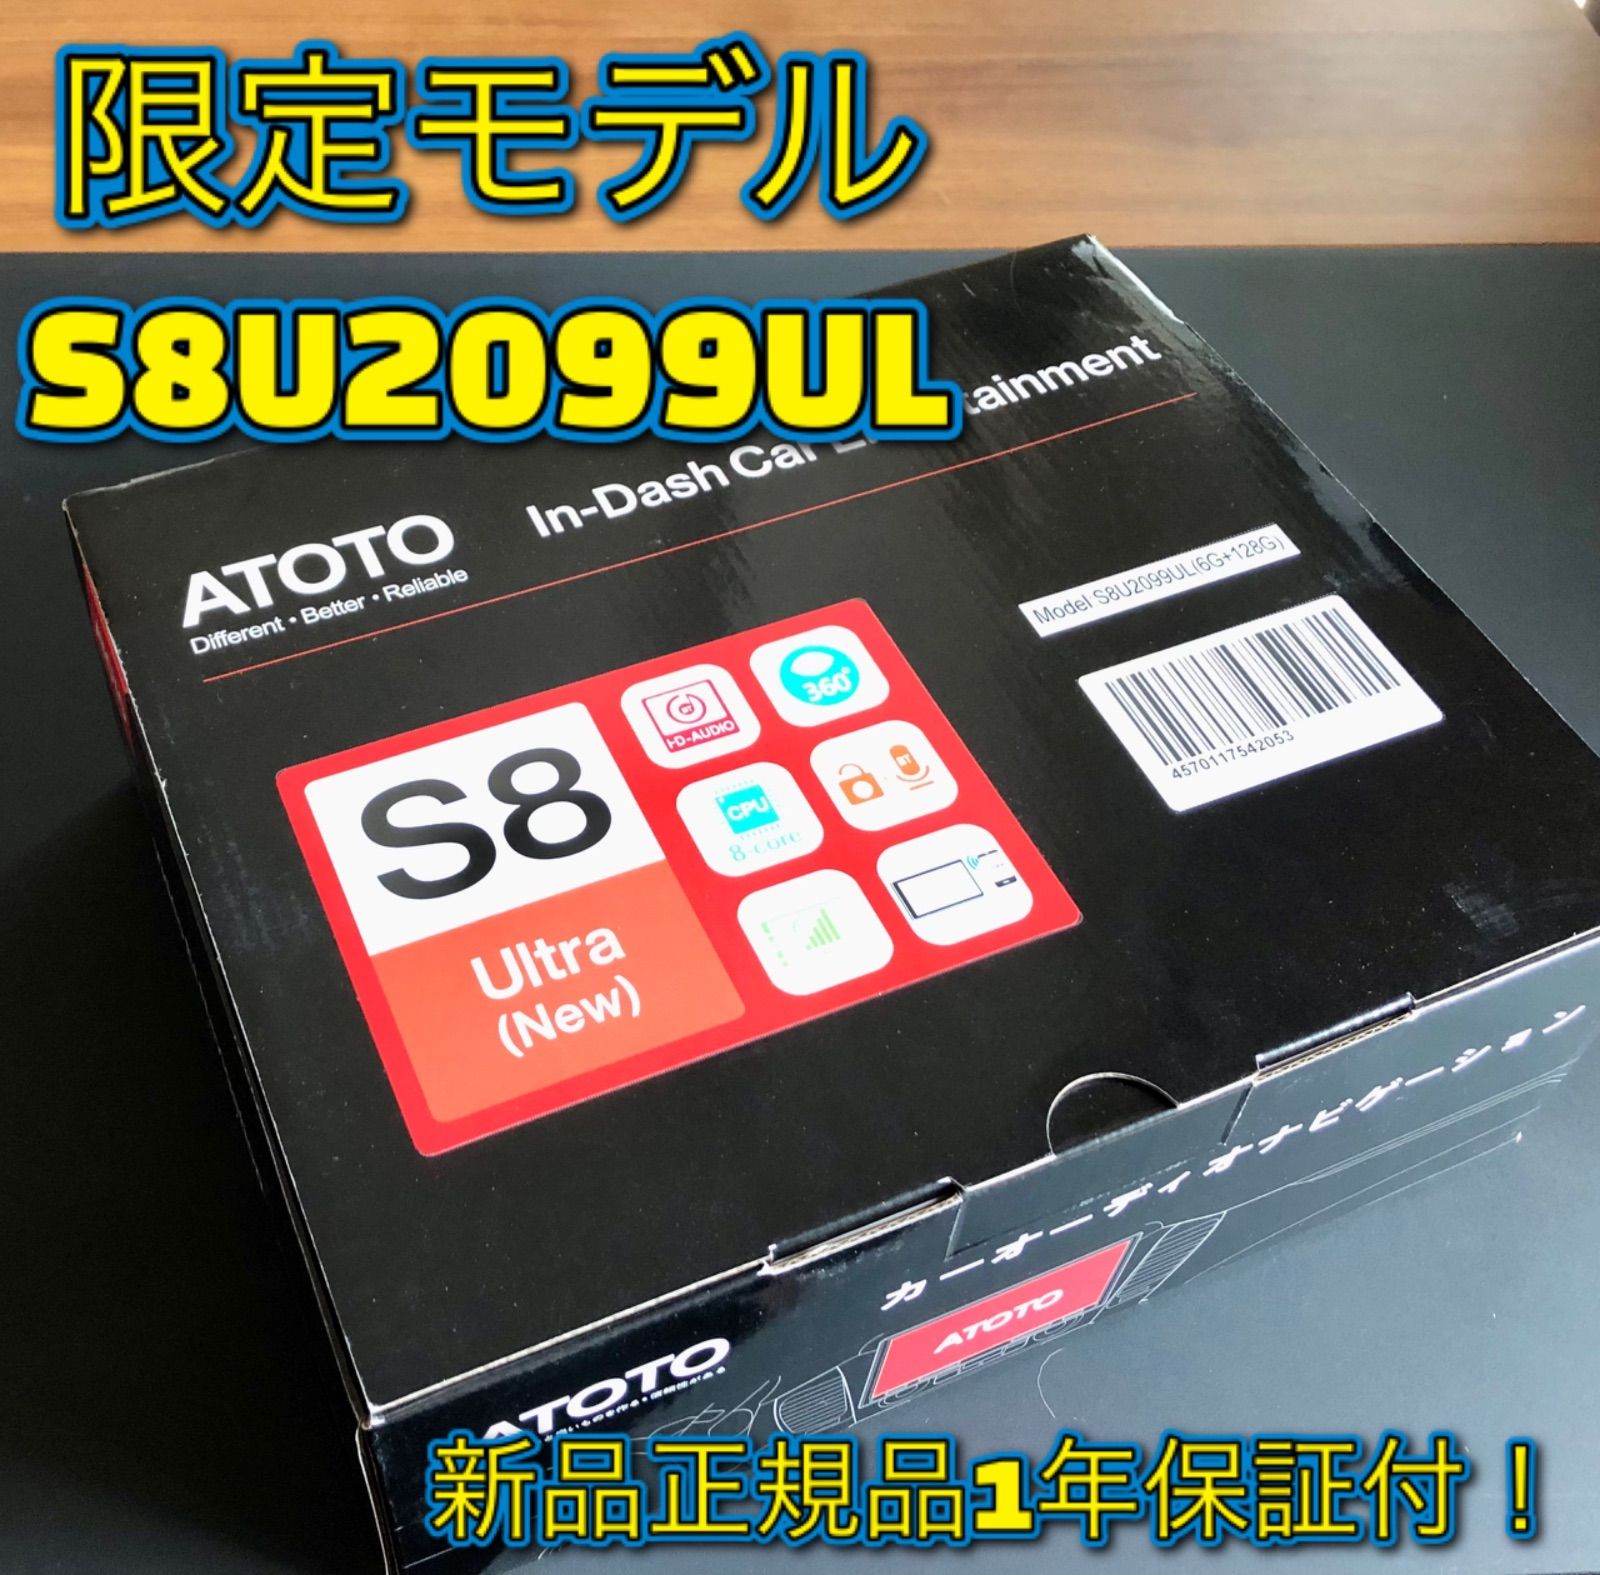 限定モデル ATOTO S8U2099ULウルトラ 9インチ6G+128G 4Gてう - メルカリ